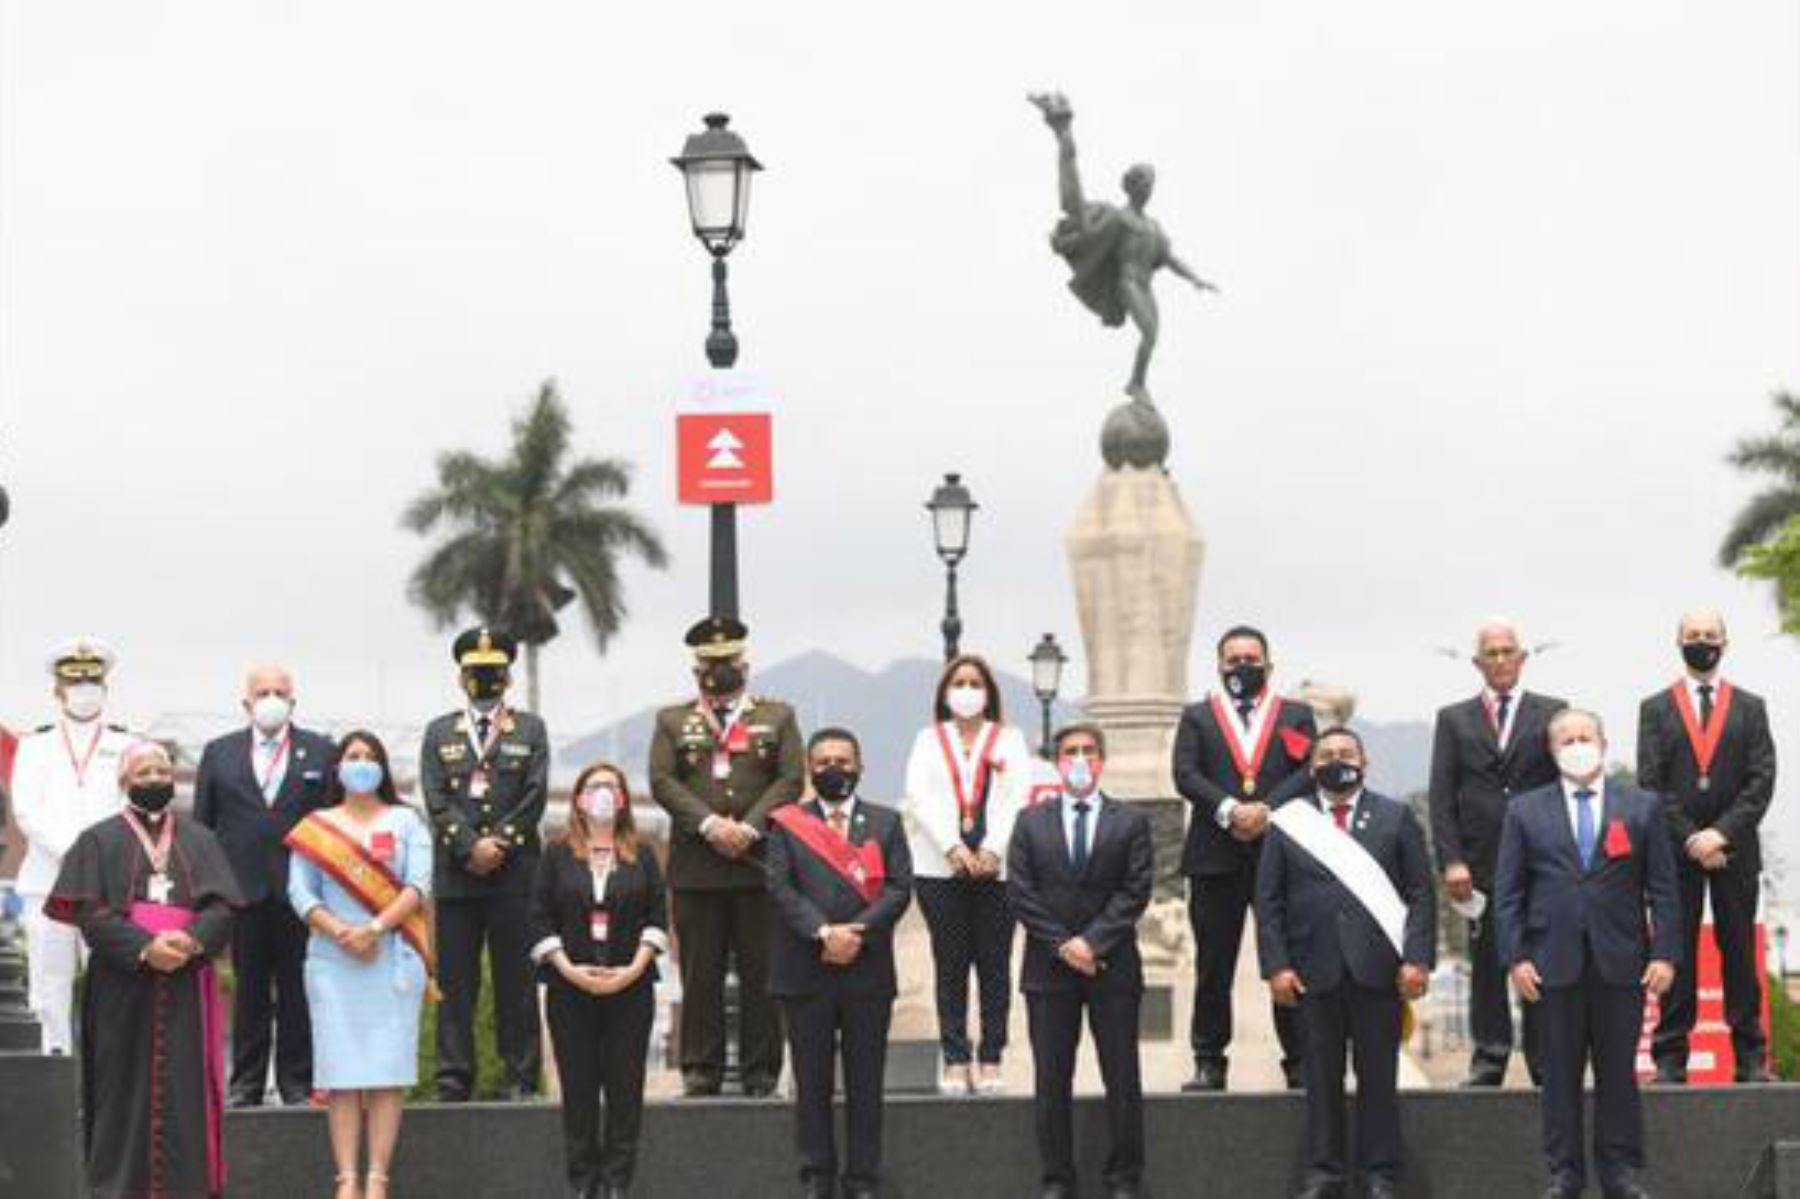 La histórica plaza de Armas de Trujillo fue testigo de la sesión solemne por la conmemoración de los 200 años de la independencia de Trujillo. Foto: Mincul